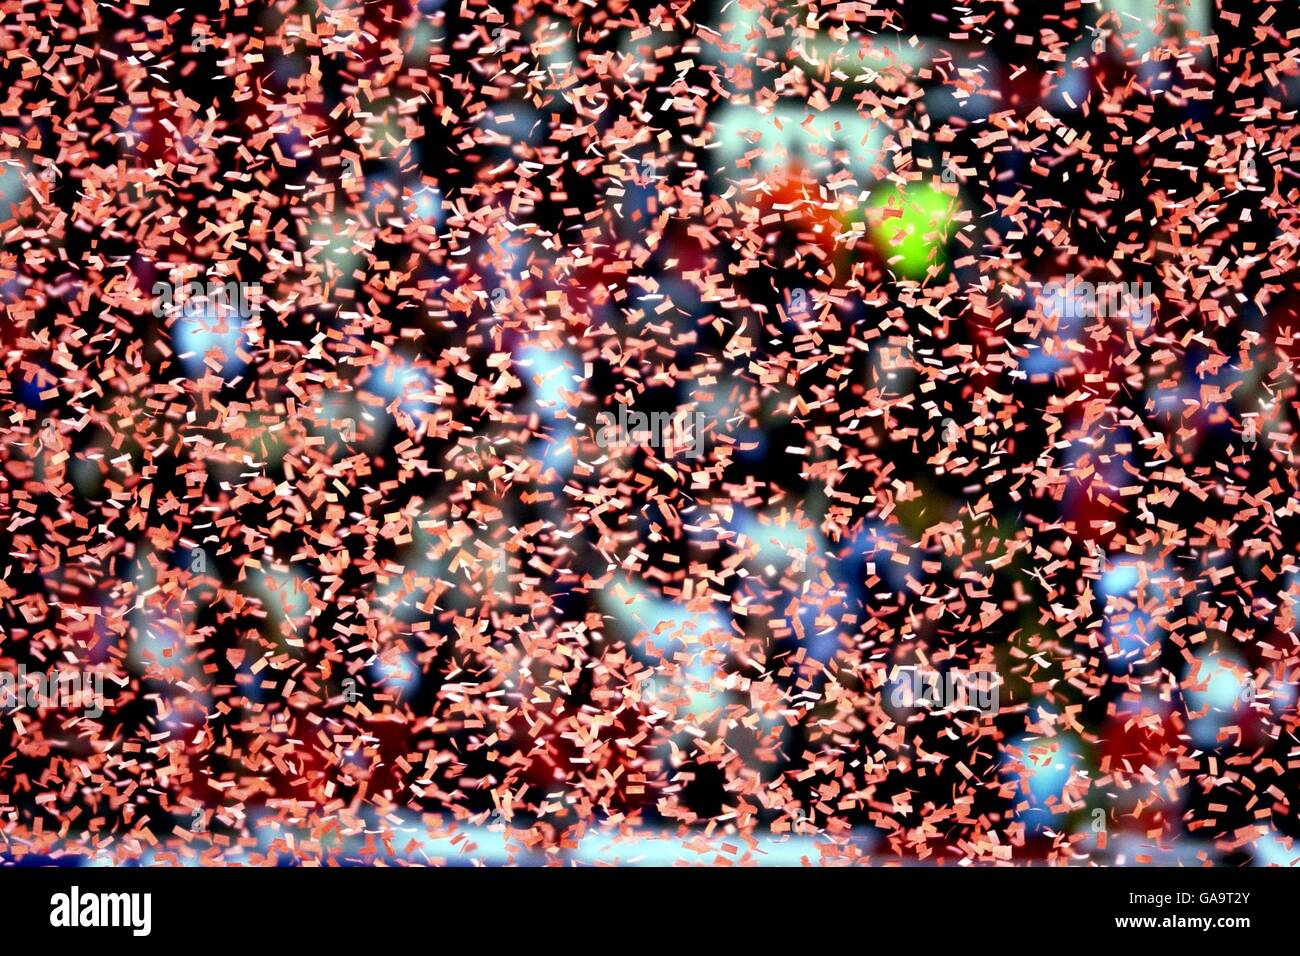 Football - finale de la coupe AXA FA - Arsenal / Chelsea.De petits morceaux de papier rouges tombent sur le terrain Banque D'Images